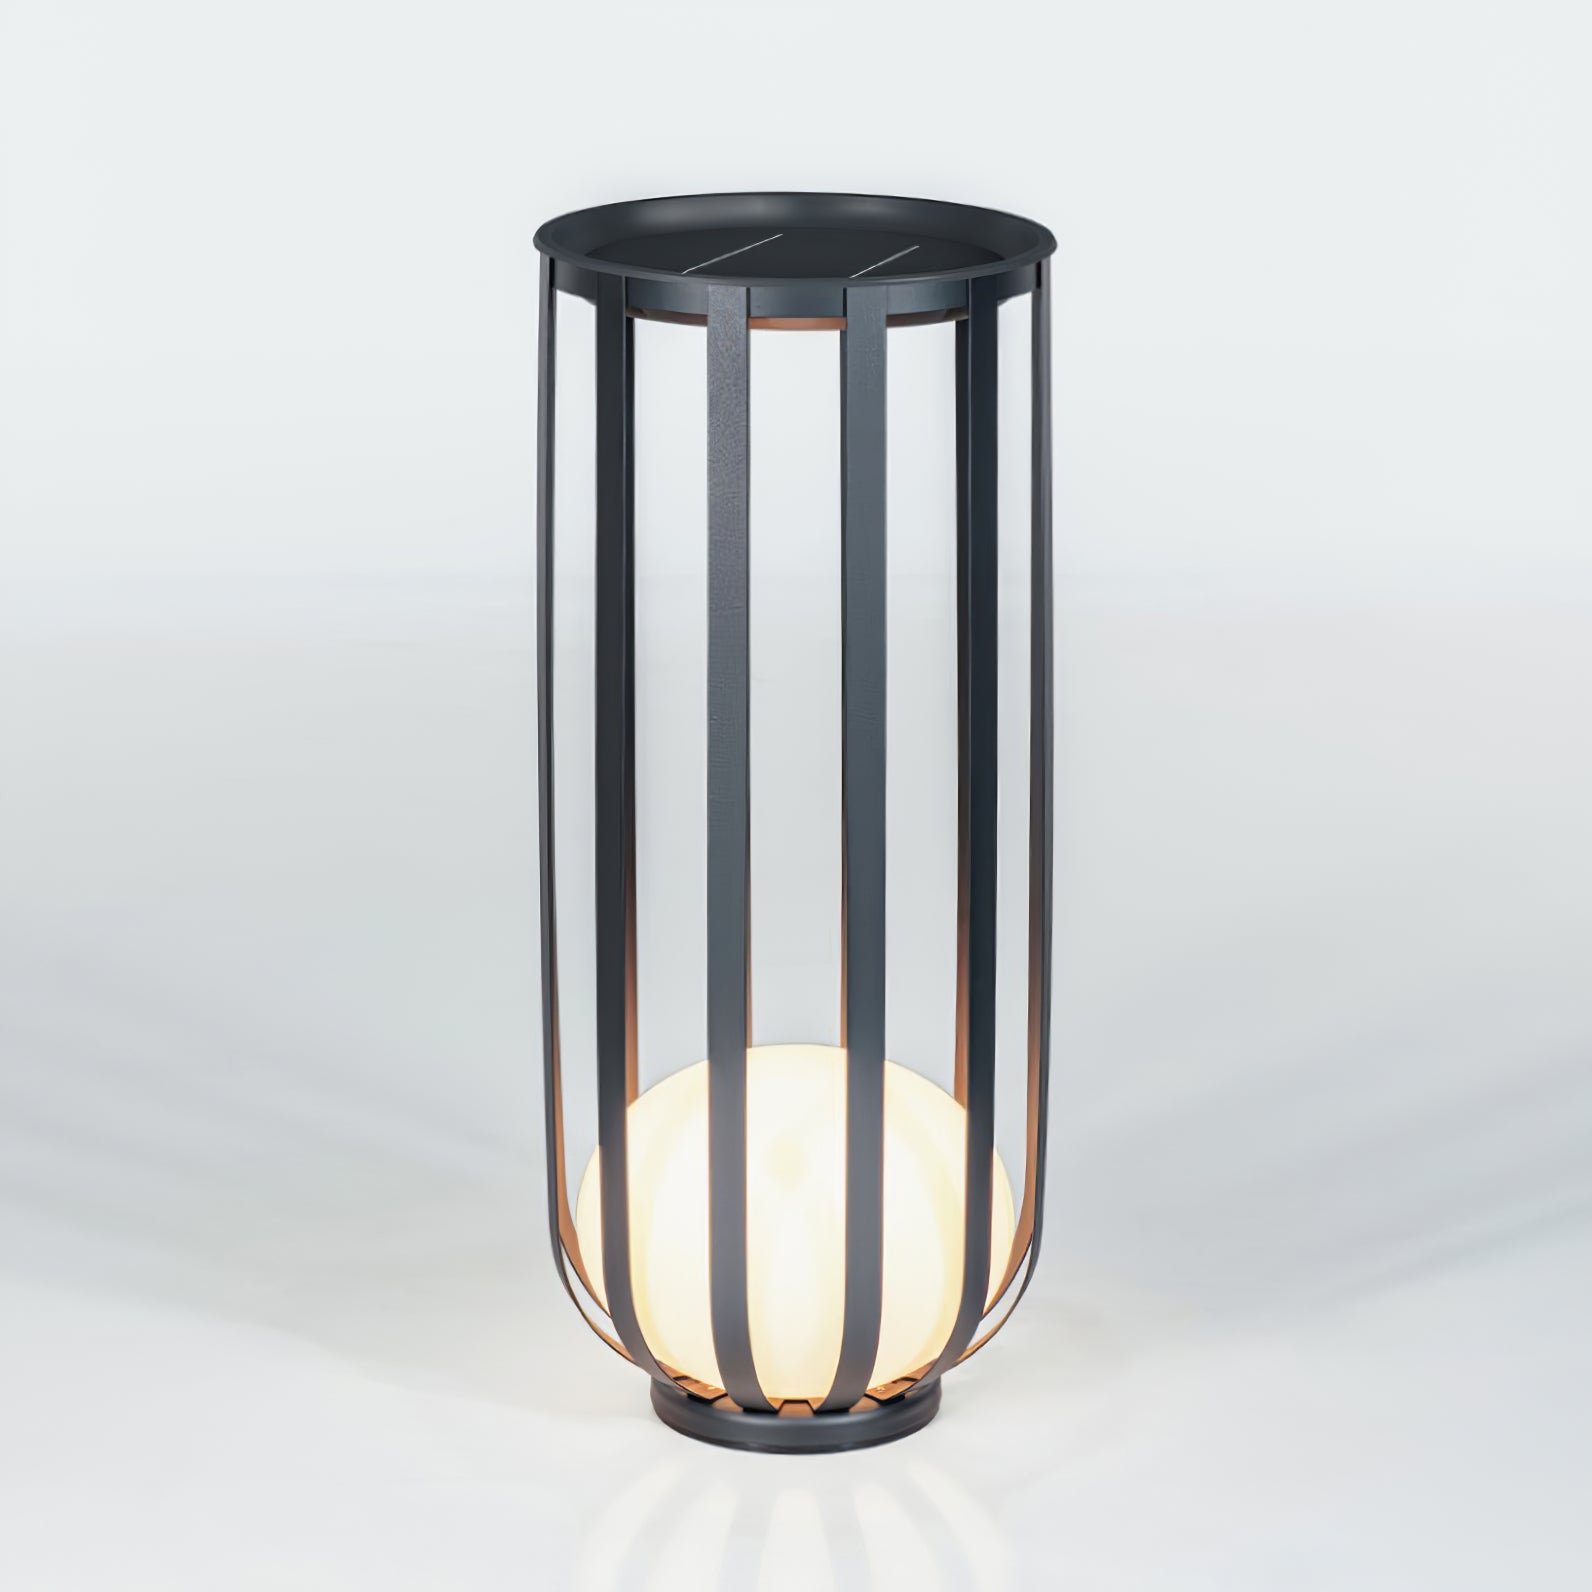 Outdoor Garden Lamp in Black with Cool Light, Diameter 15.4" x Height 37.4" (39cm x 95cm)